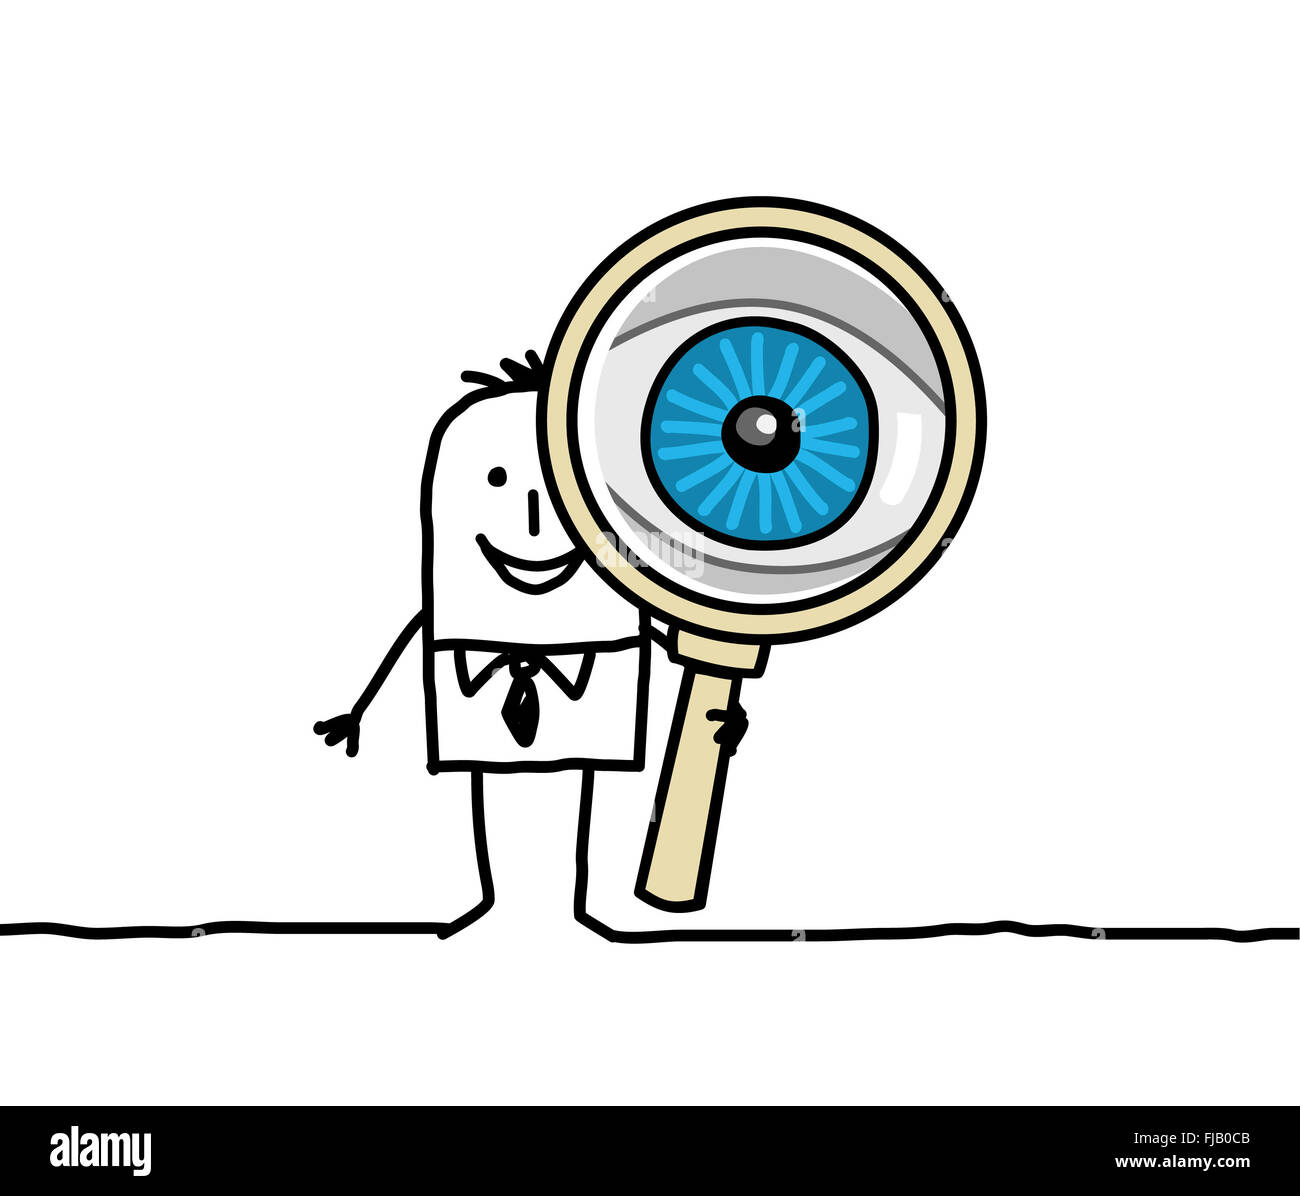 Disegnata a mano i personaggi dei cartoni animati - big eye e lente di ingrandimento Foto Stock